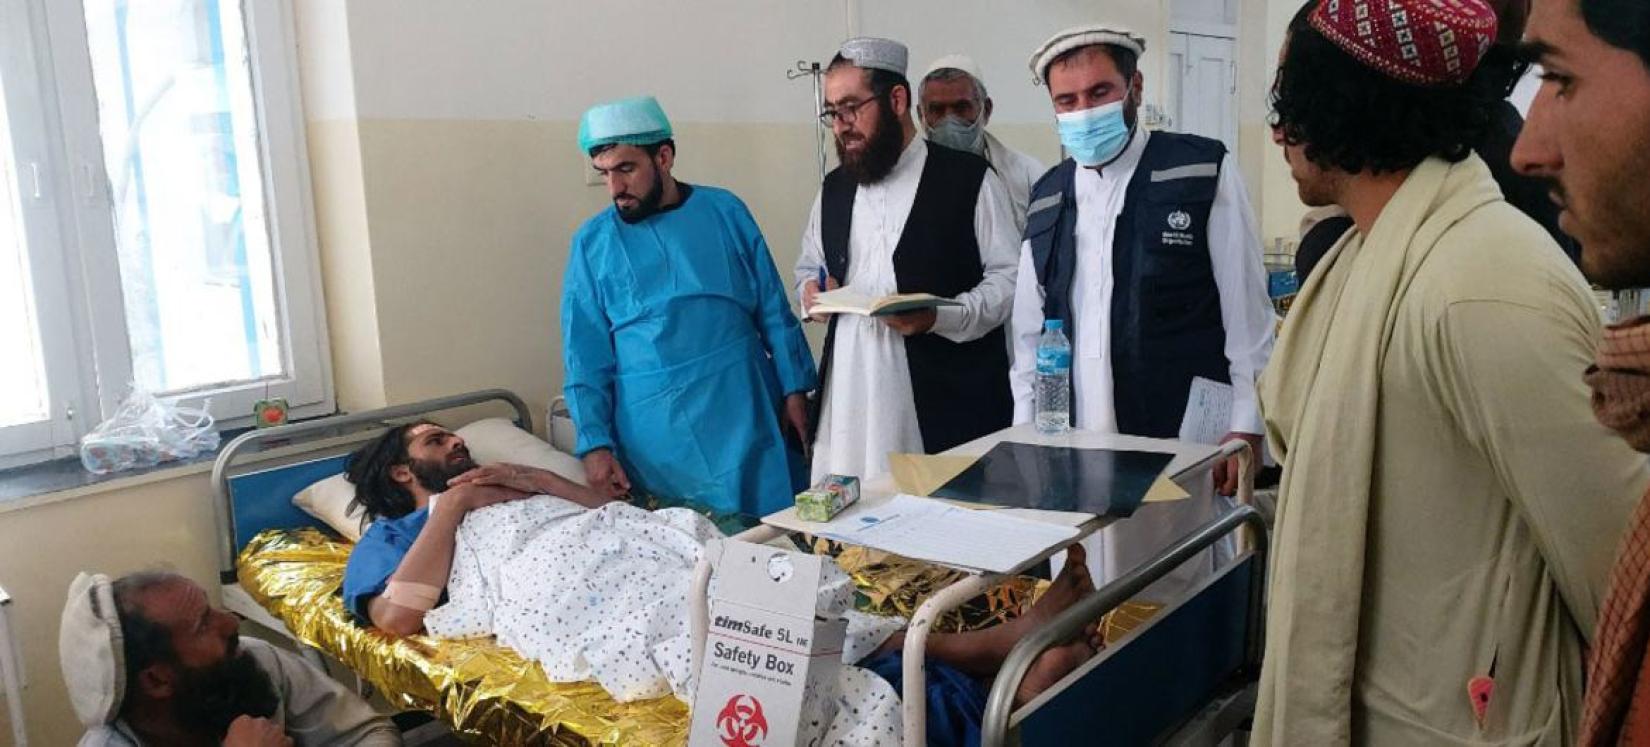 As equipes da OMS estão apoiando os profissionais de saúde locais para salvar vidas e cuidar das pessoas afetadas pelo terremoto no Afeganistão.